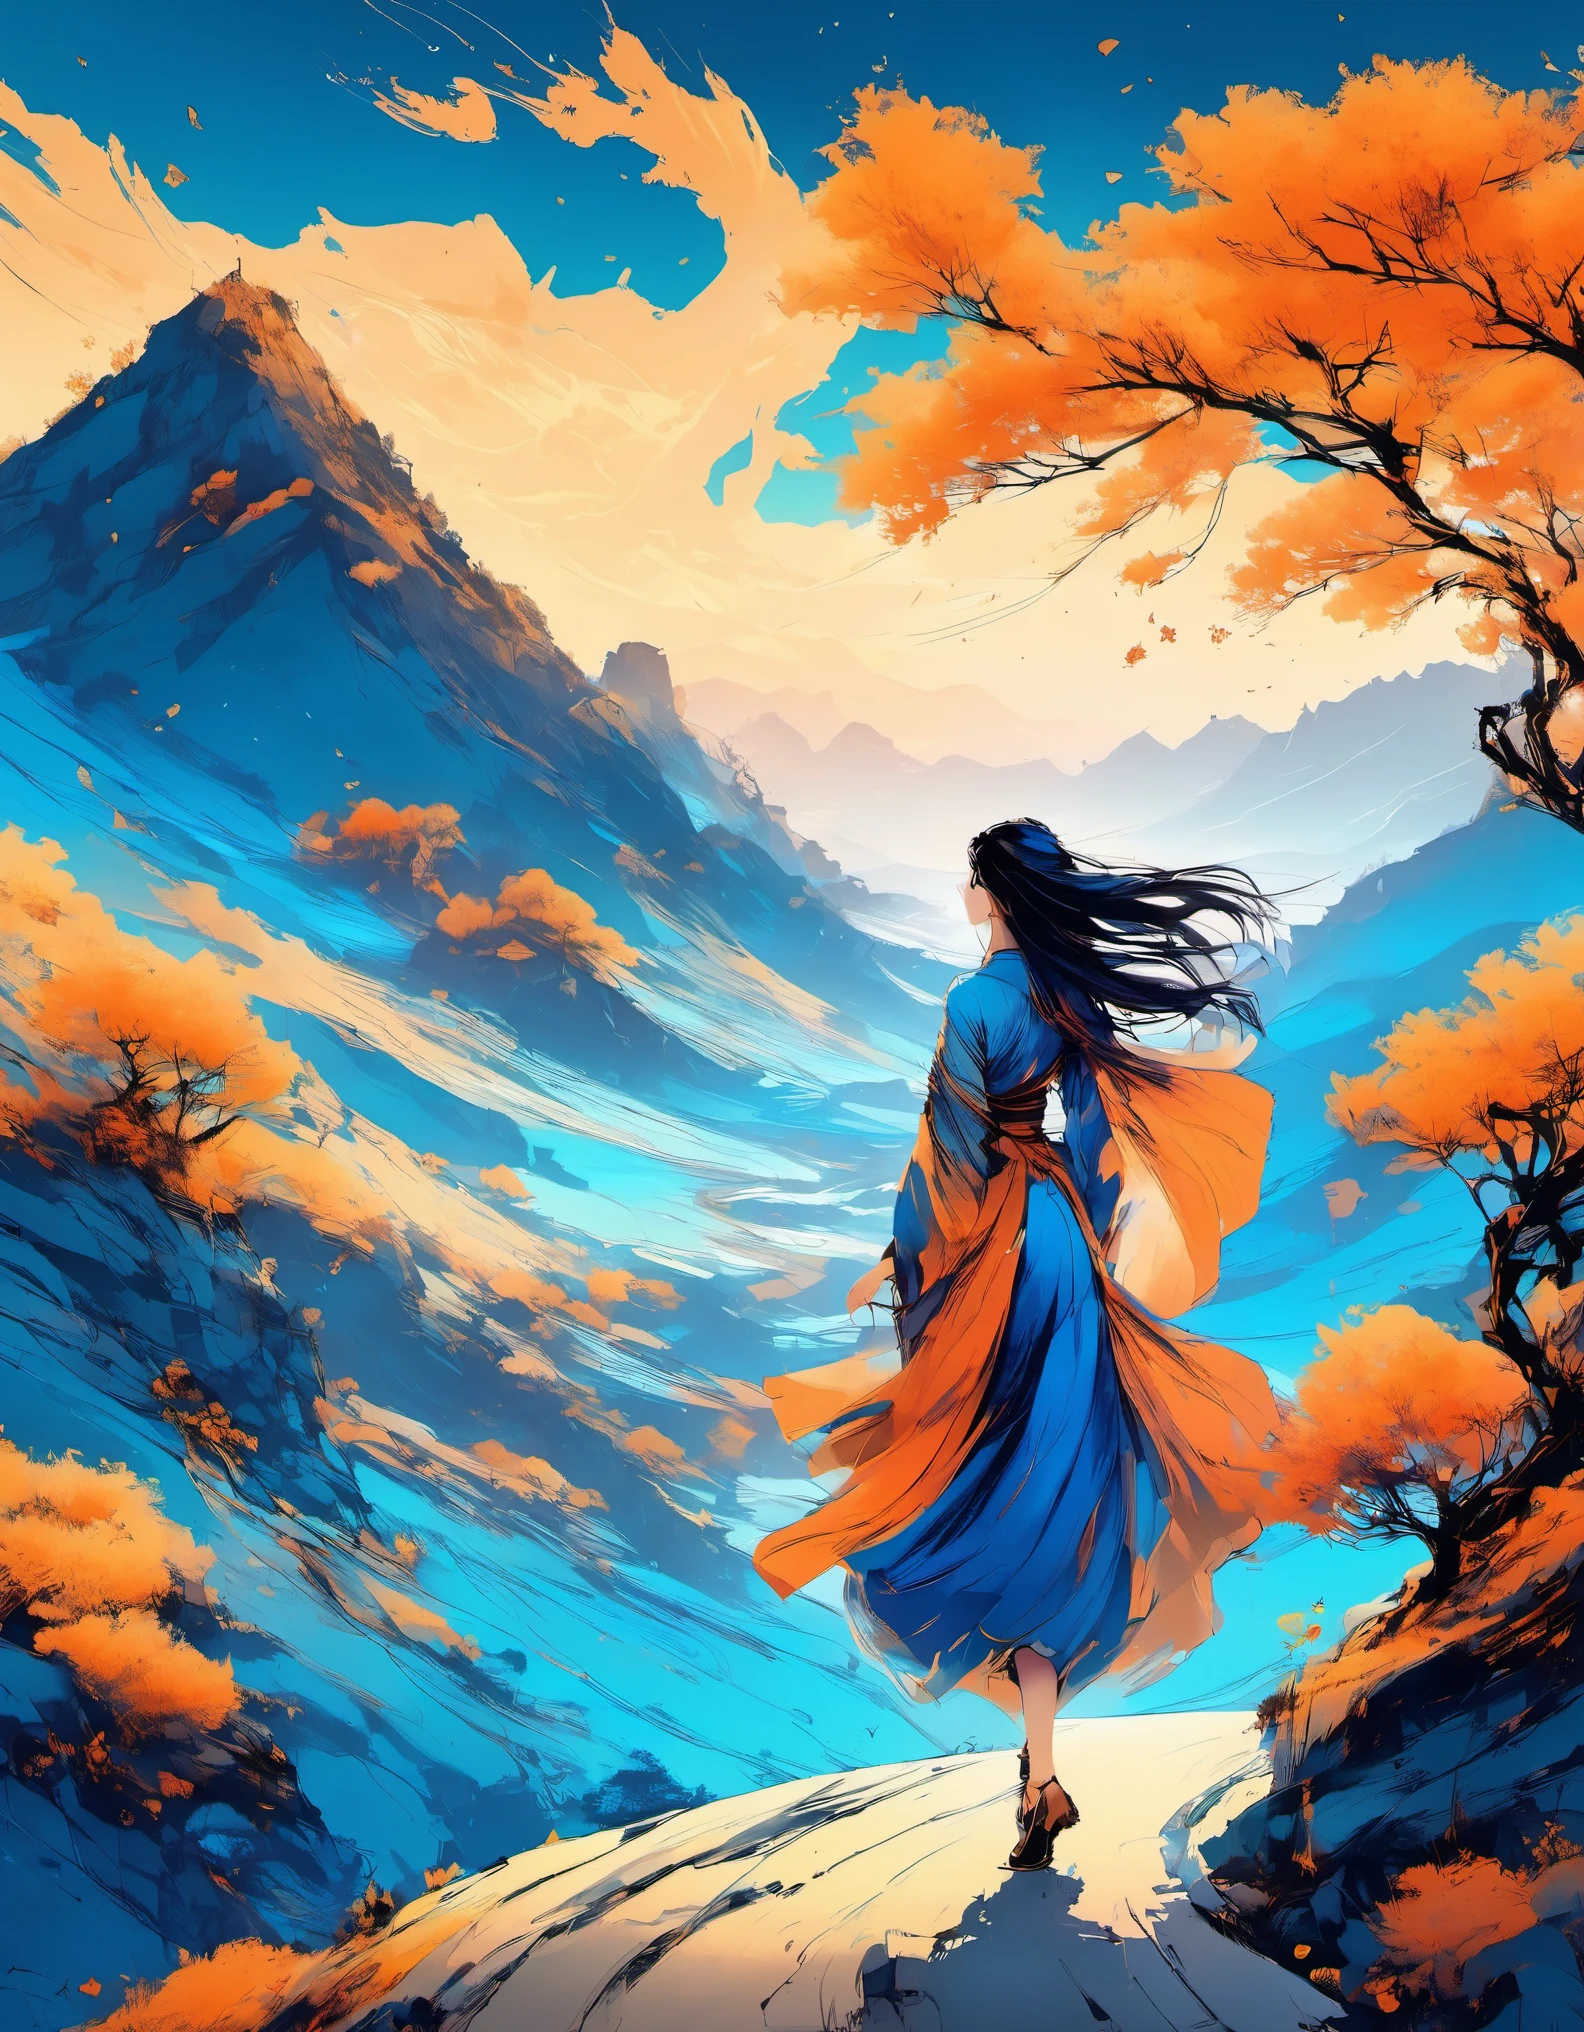 (Melhor qualidade de imagem,4K,alta definição:1.2),super delicado,(realista,realista:1.37),montanha,estrada,jornal,A garota dança como uma onda com muito papel de fax,Lá&#39;um feitiço mágico flutuando nele,Muitos feitiços mágicos flutuantes,Ilustrações no estilo artístico Dunhuang,estilo zen,gradiente azul,azul e laranja,movimentos suaves,foco claro,fantasia,romântico。